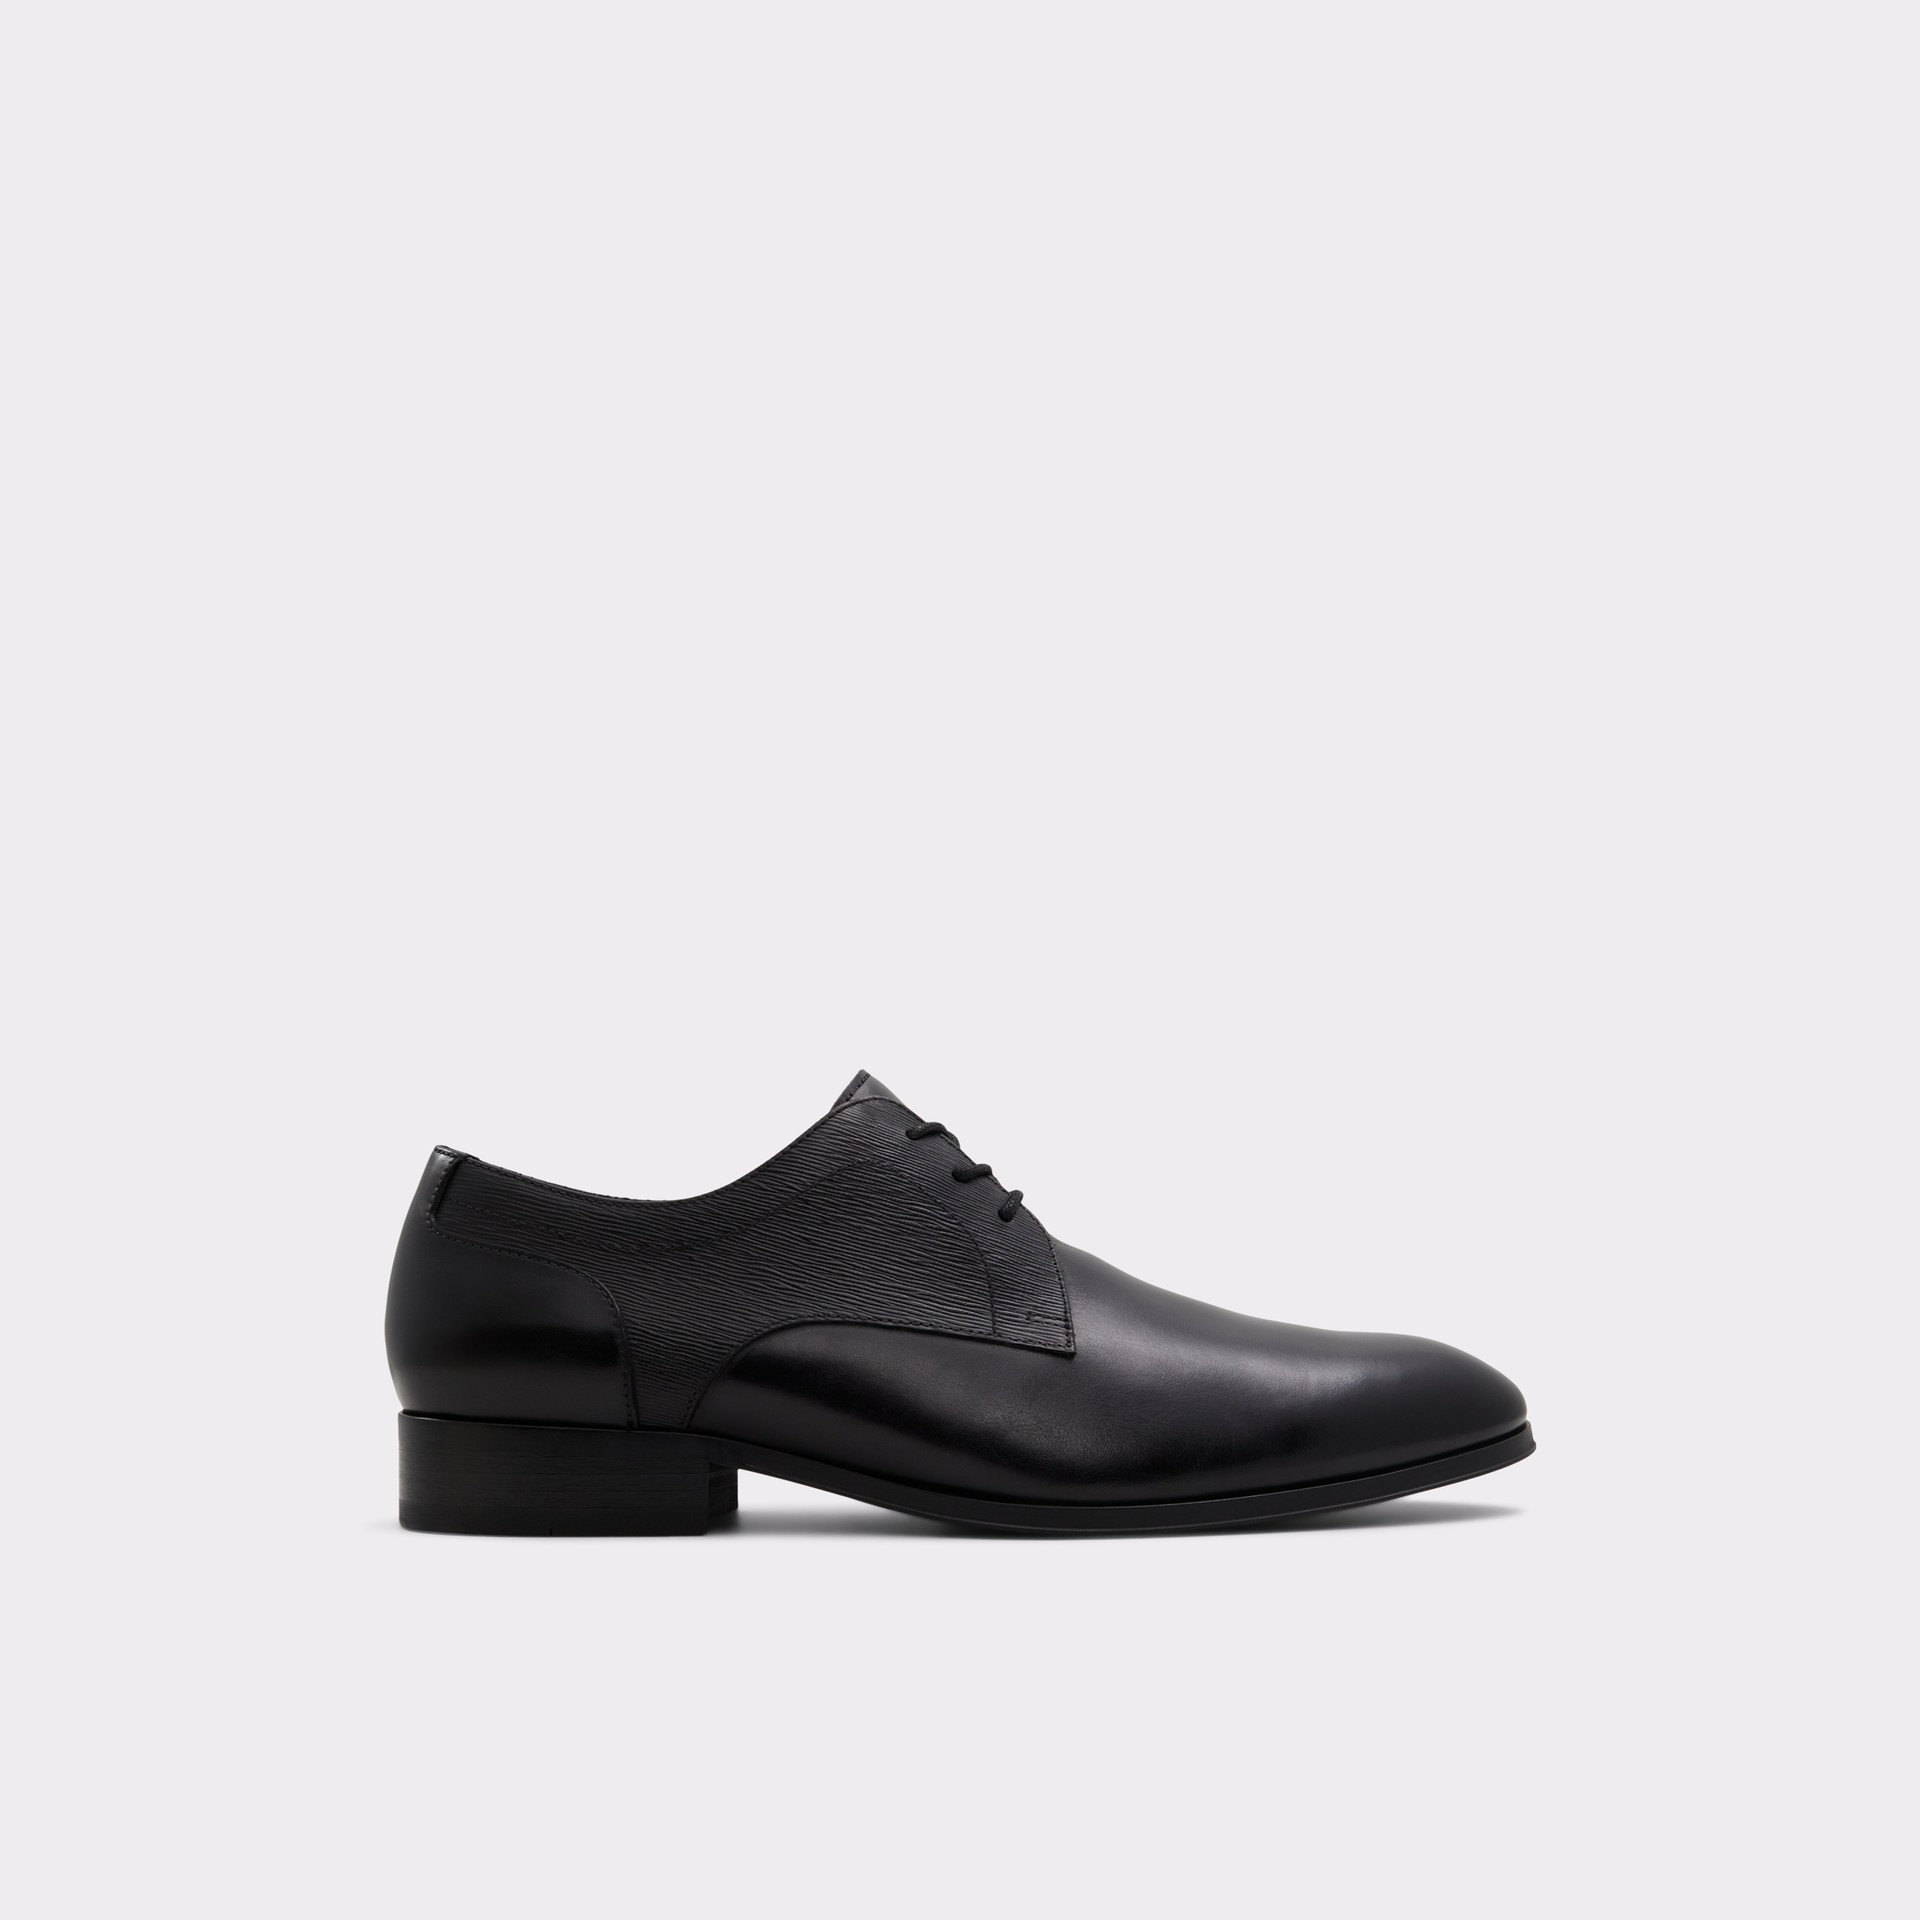 Zapatos de vestir para hombre en piel negro - KINGSLEY001001008